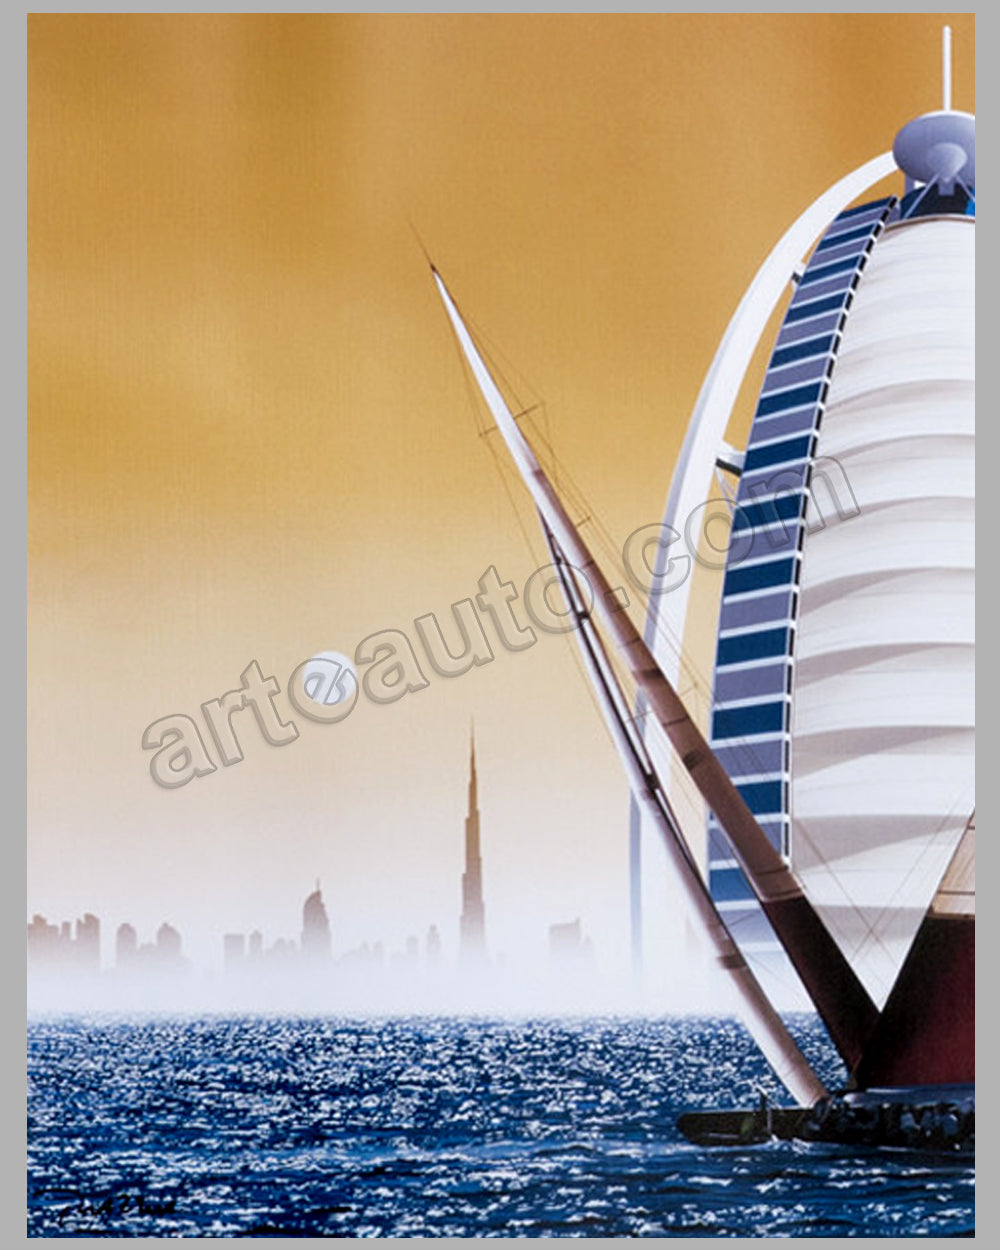 Louis Vuitton Trophy - Dubai - 2010 large poster by Razzia - l'art et  l'automobile